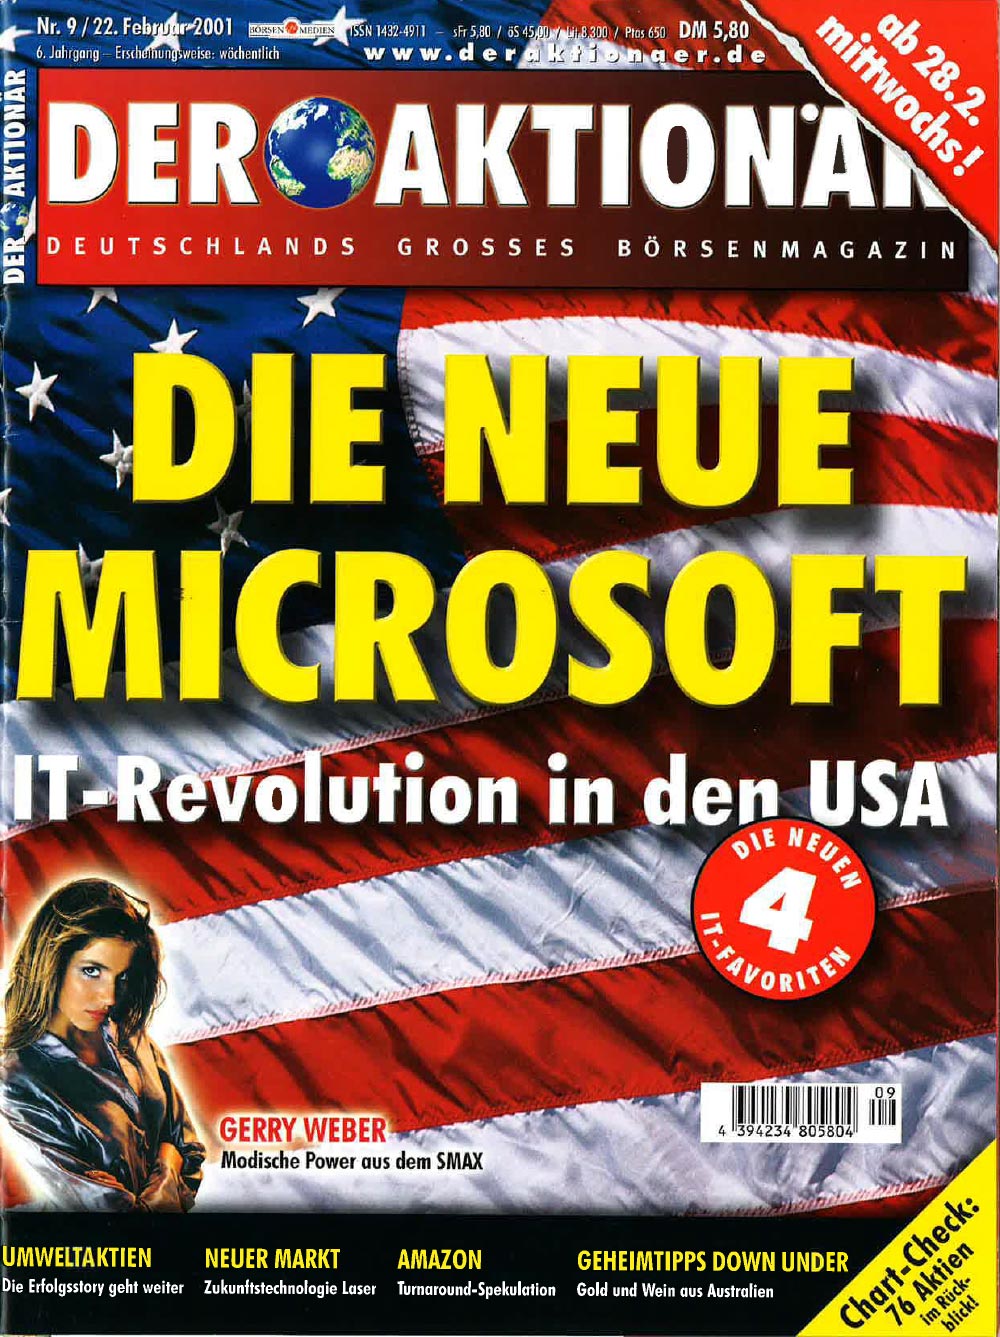 DER AKTIONÄR Februar 2001: Die neue Microsoft